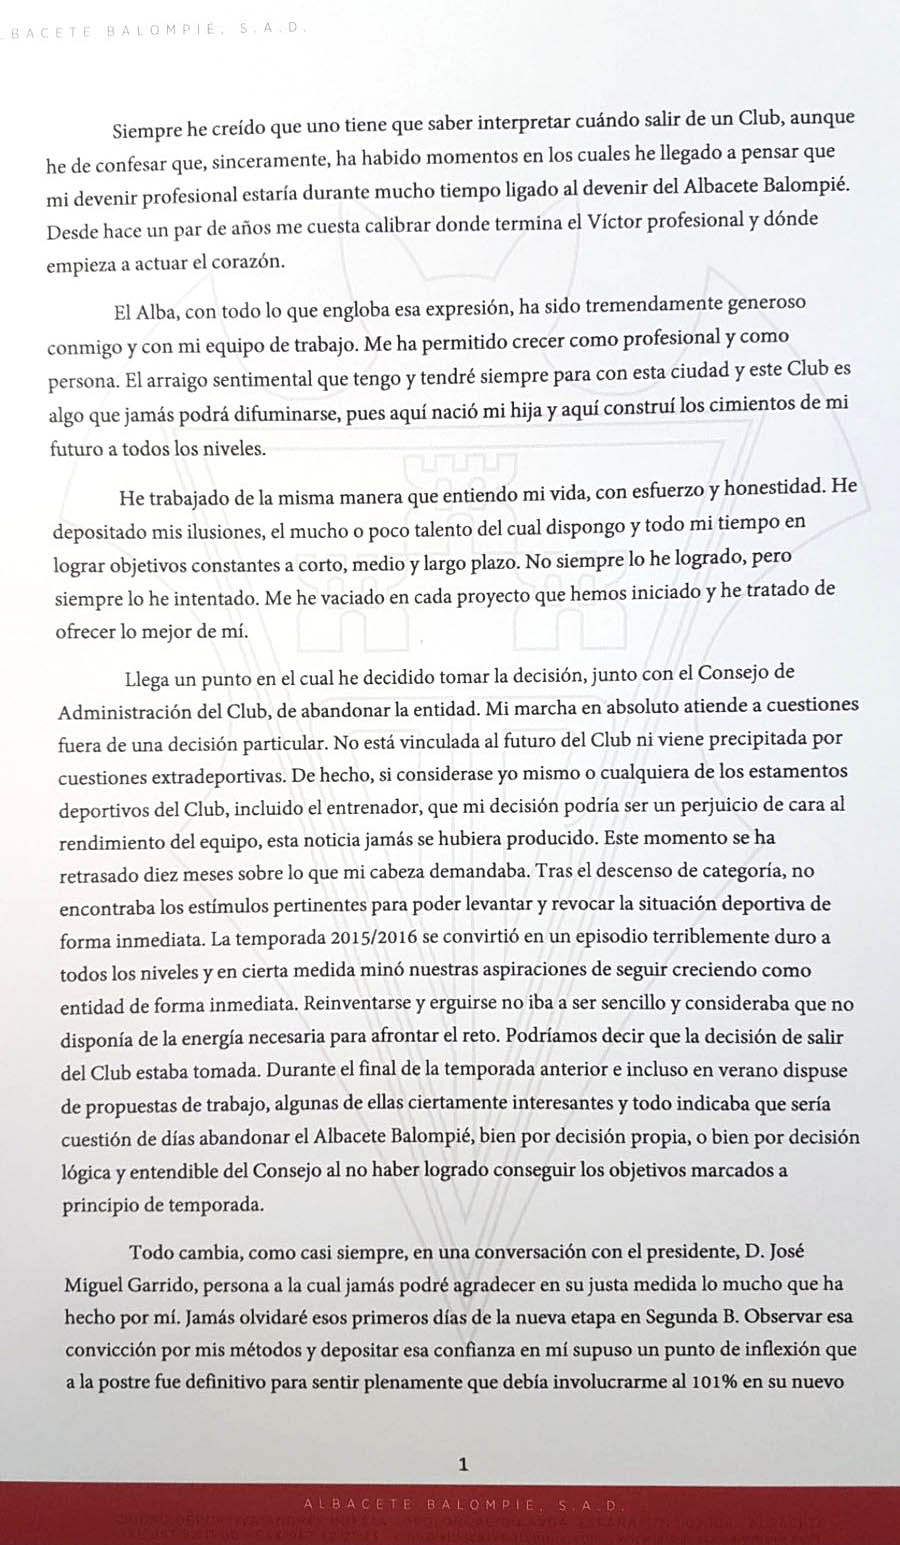 La carta de despedida de Víctor Moreno